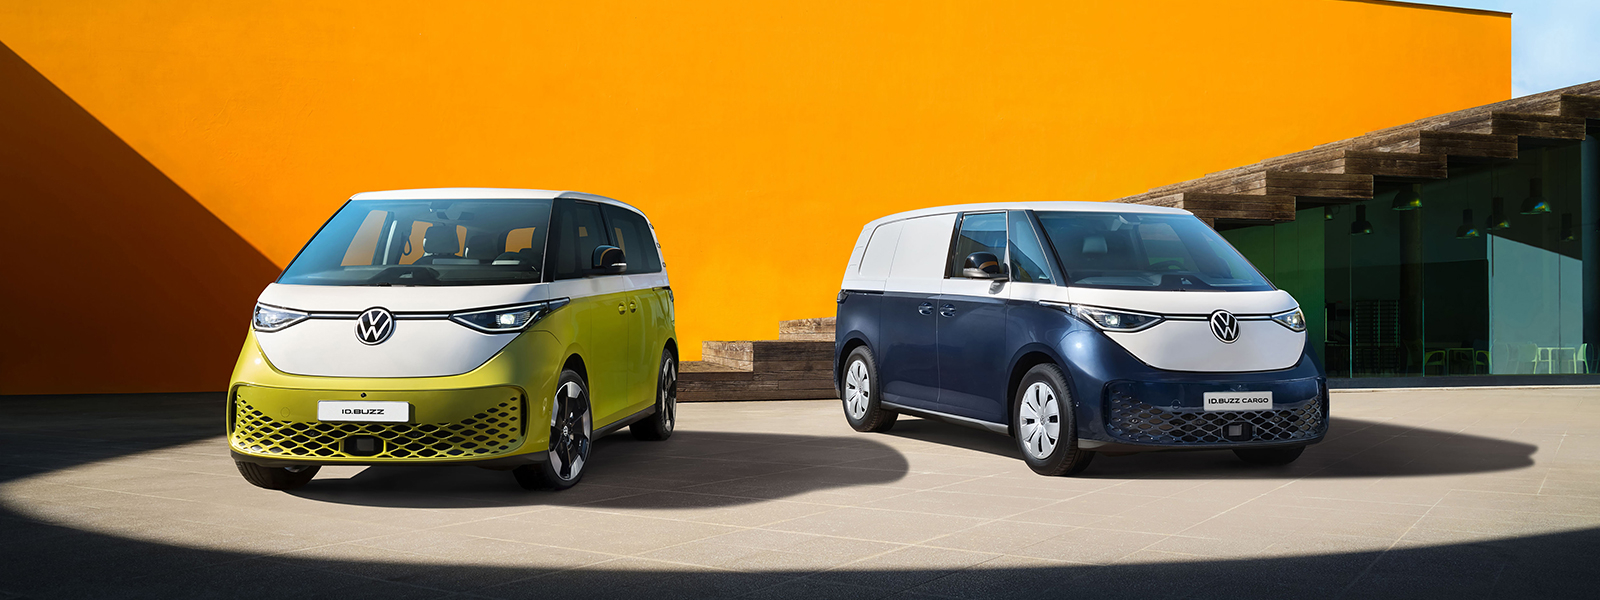 Id.Buzz e Id.Buzz cargo i nuovi veicoli elettrici di casa Volkswagen esposti per l'evento di Rangoni e Affini 